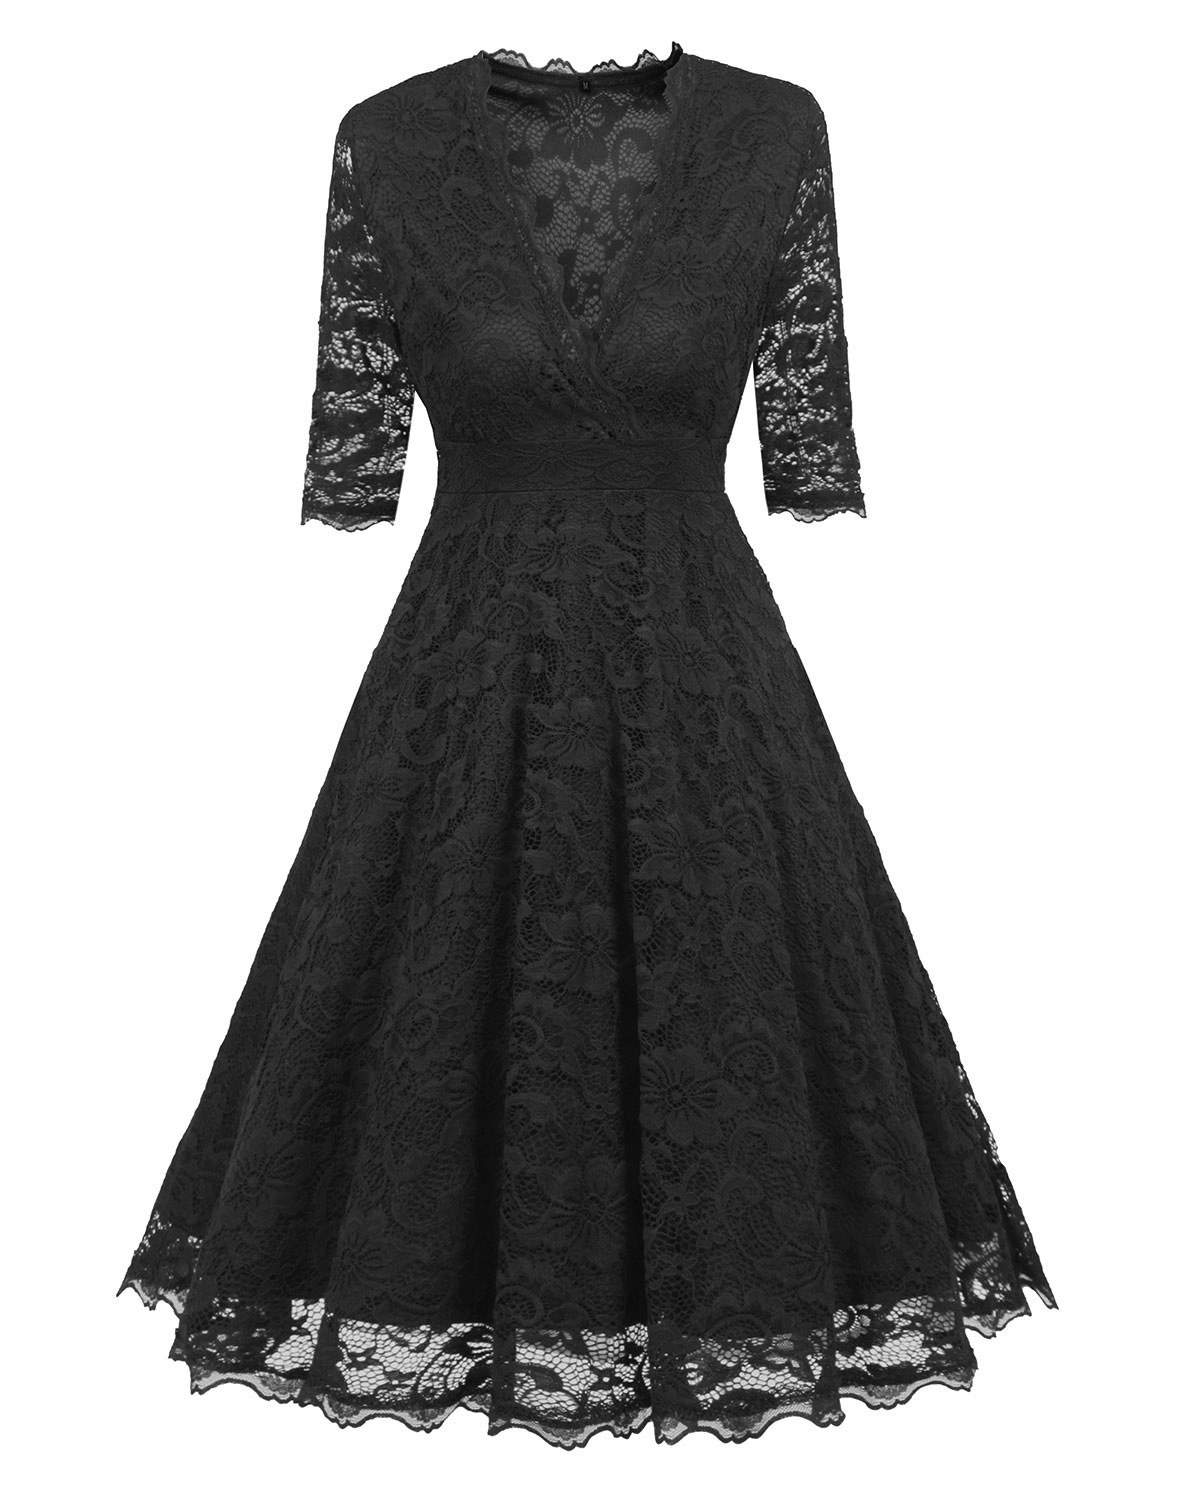 Women's Vintage Deep V Neck Slim Floral Lace Dress - Black